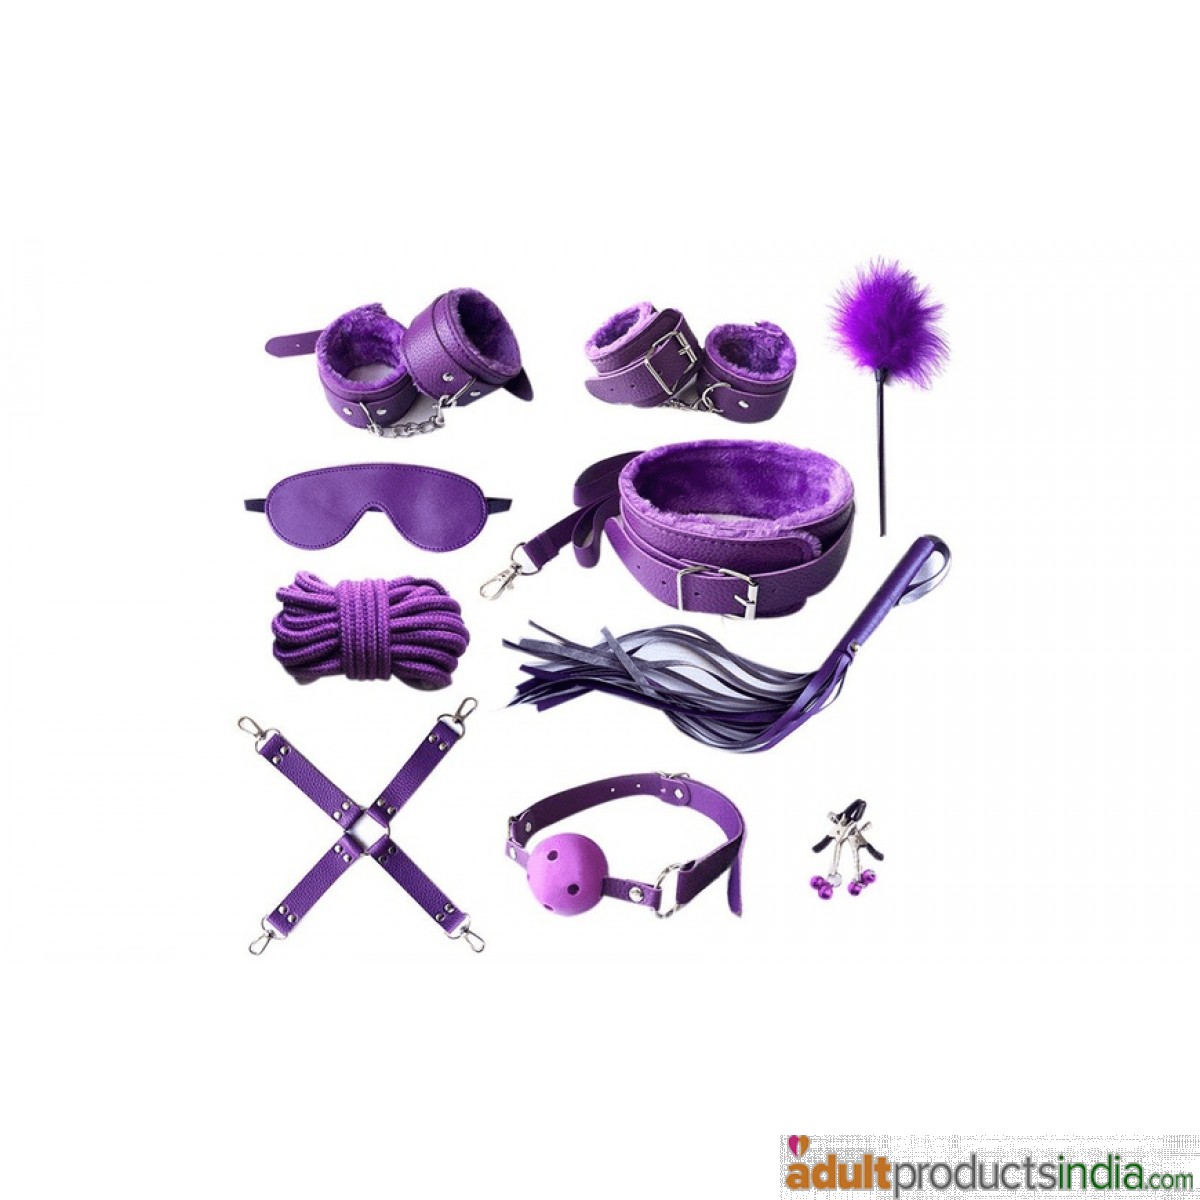 Bondage Sex Love Kit - (10 Pc Set) Purple